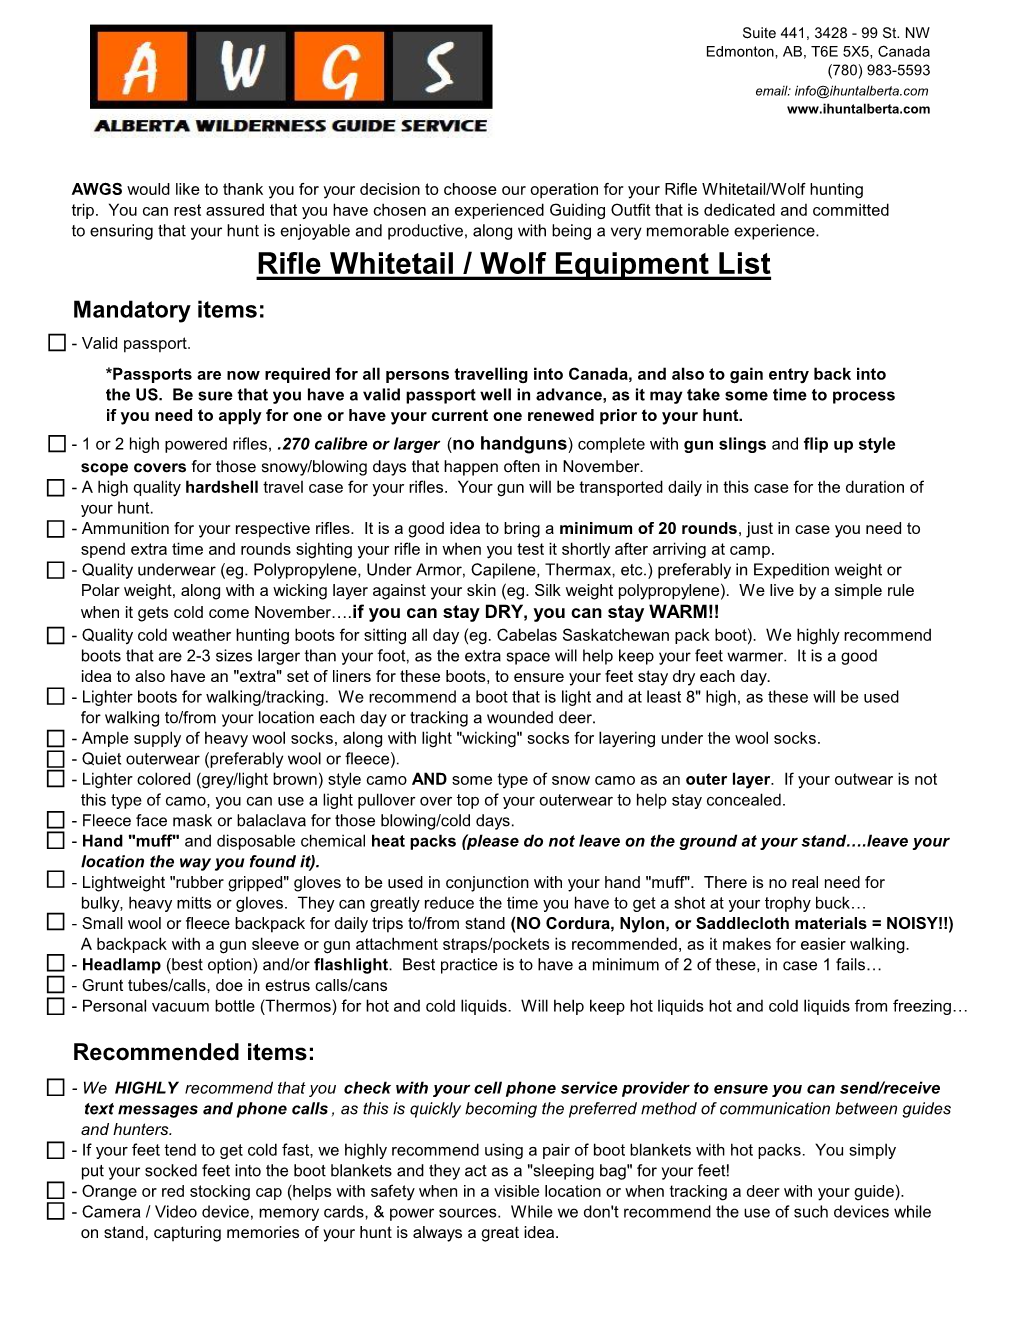 Rifle Whitetail / Wolf Equipment List Mandatory Items: - Valid Passport